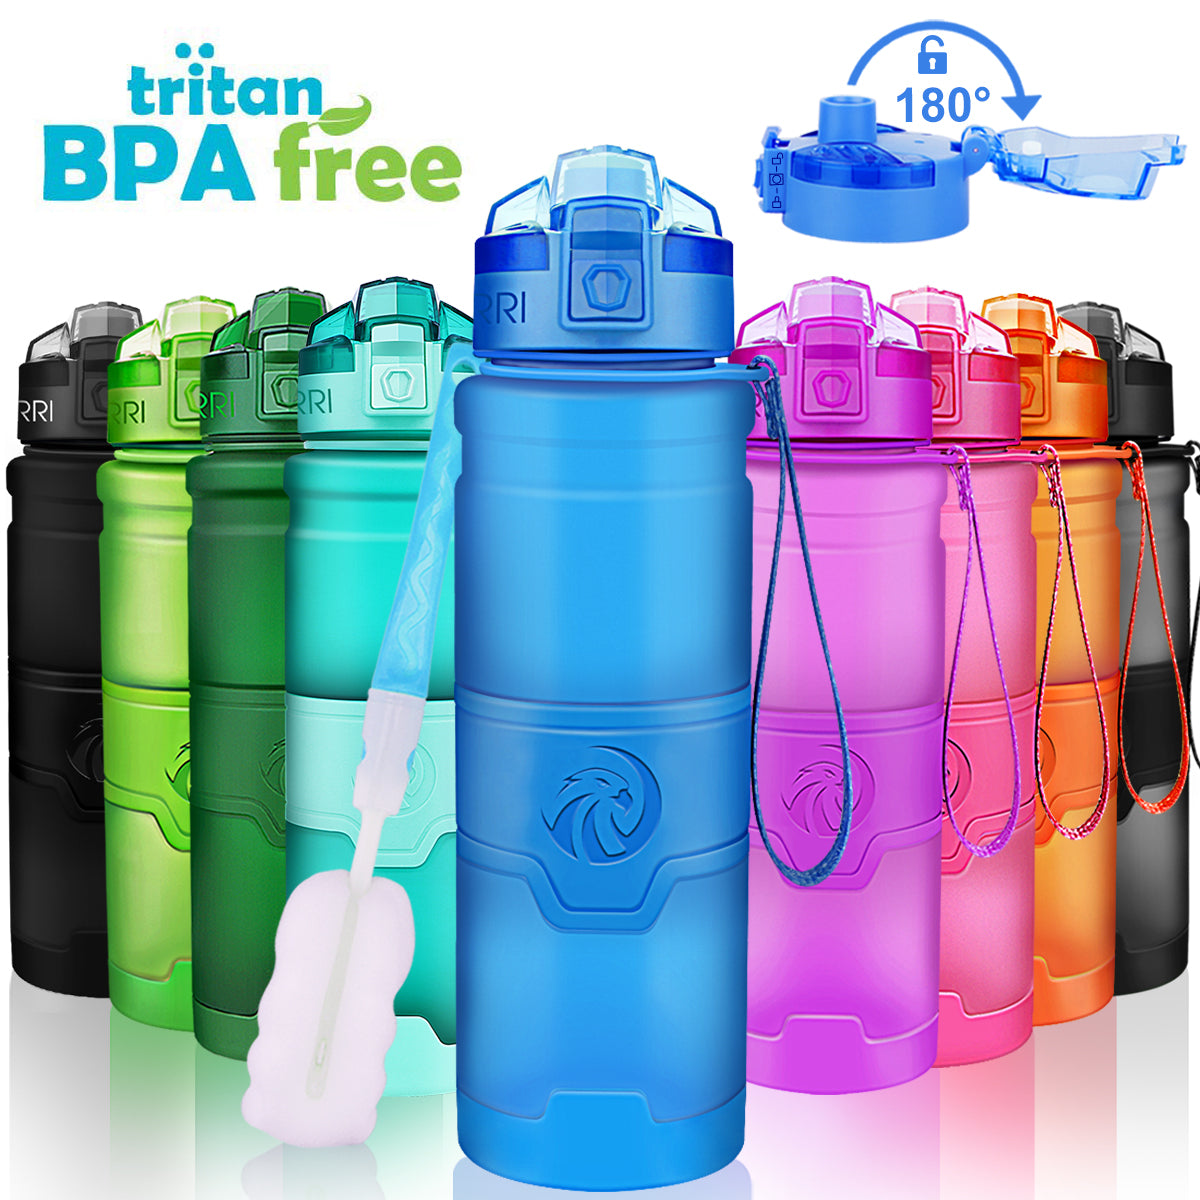 Yoga Water Bottles